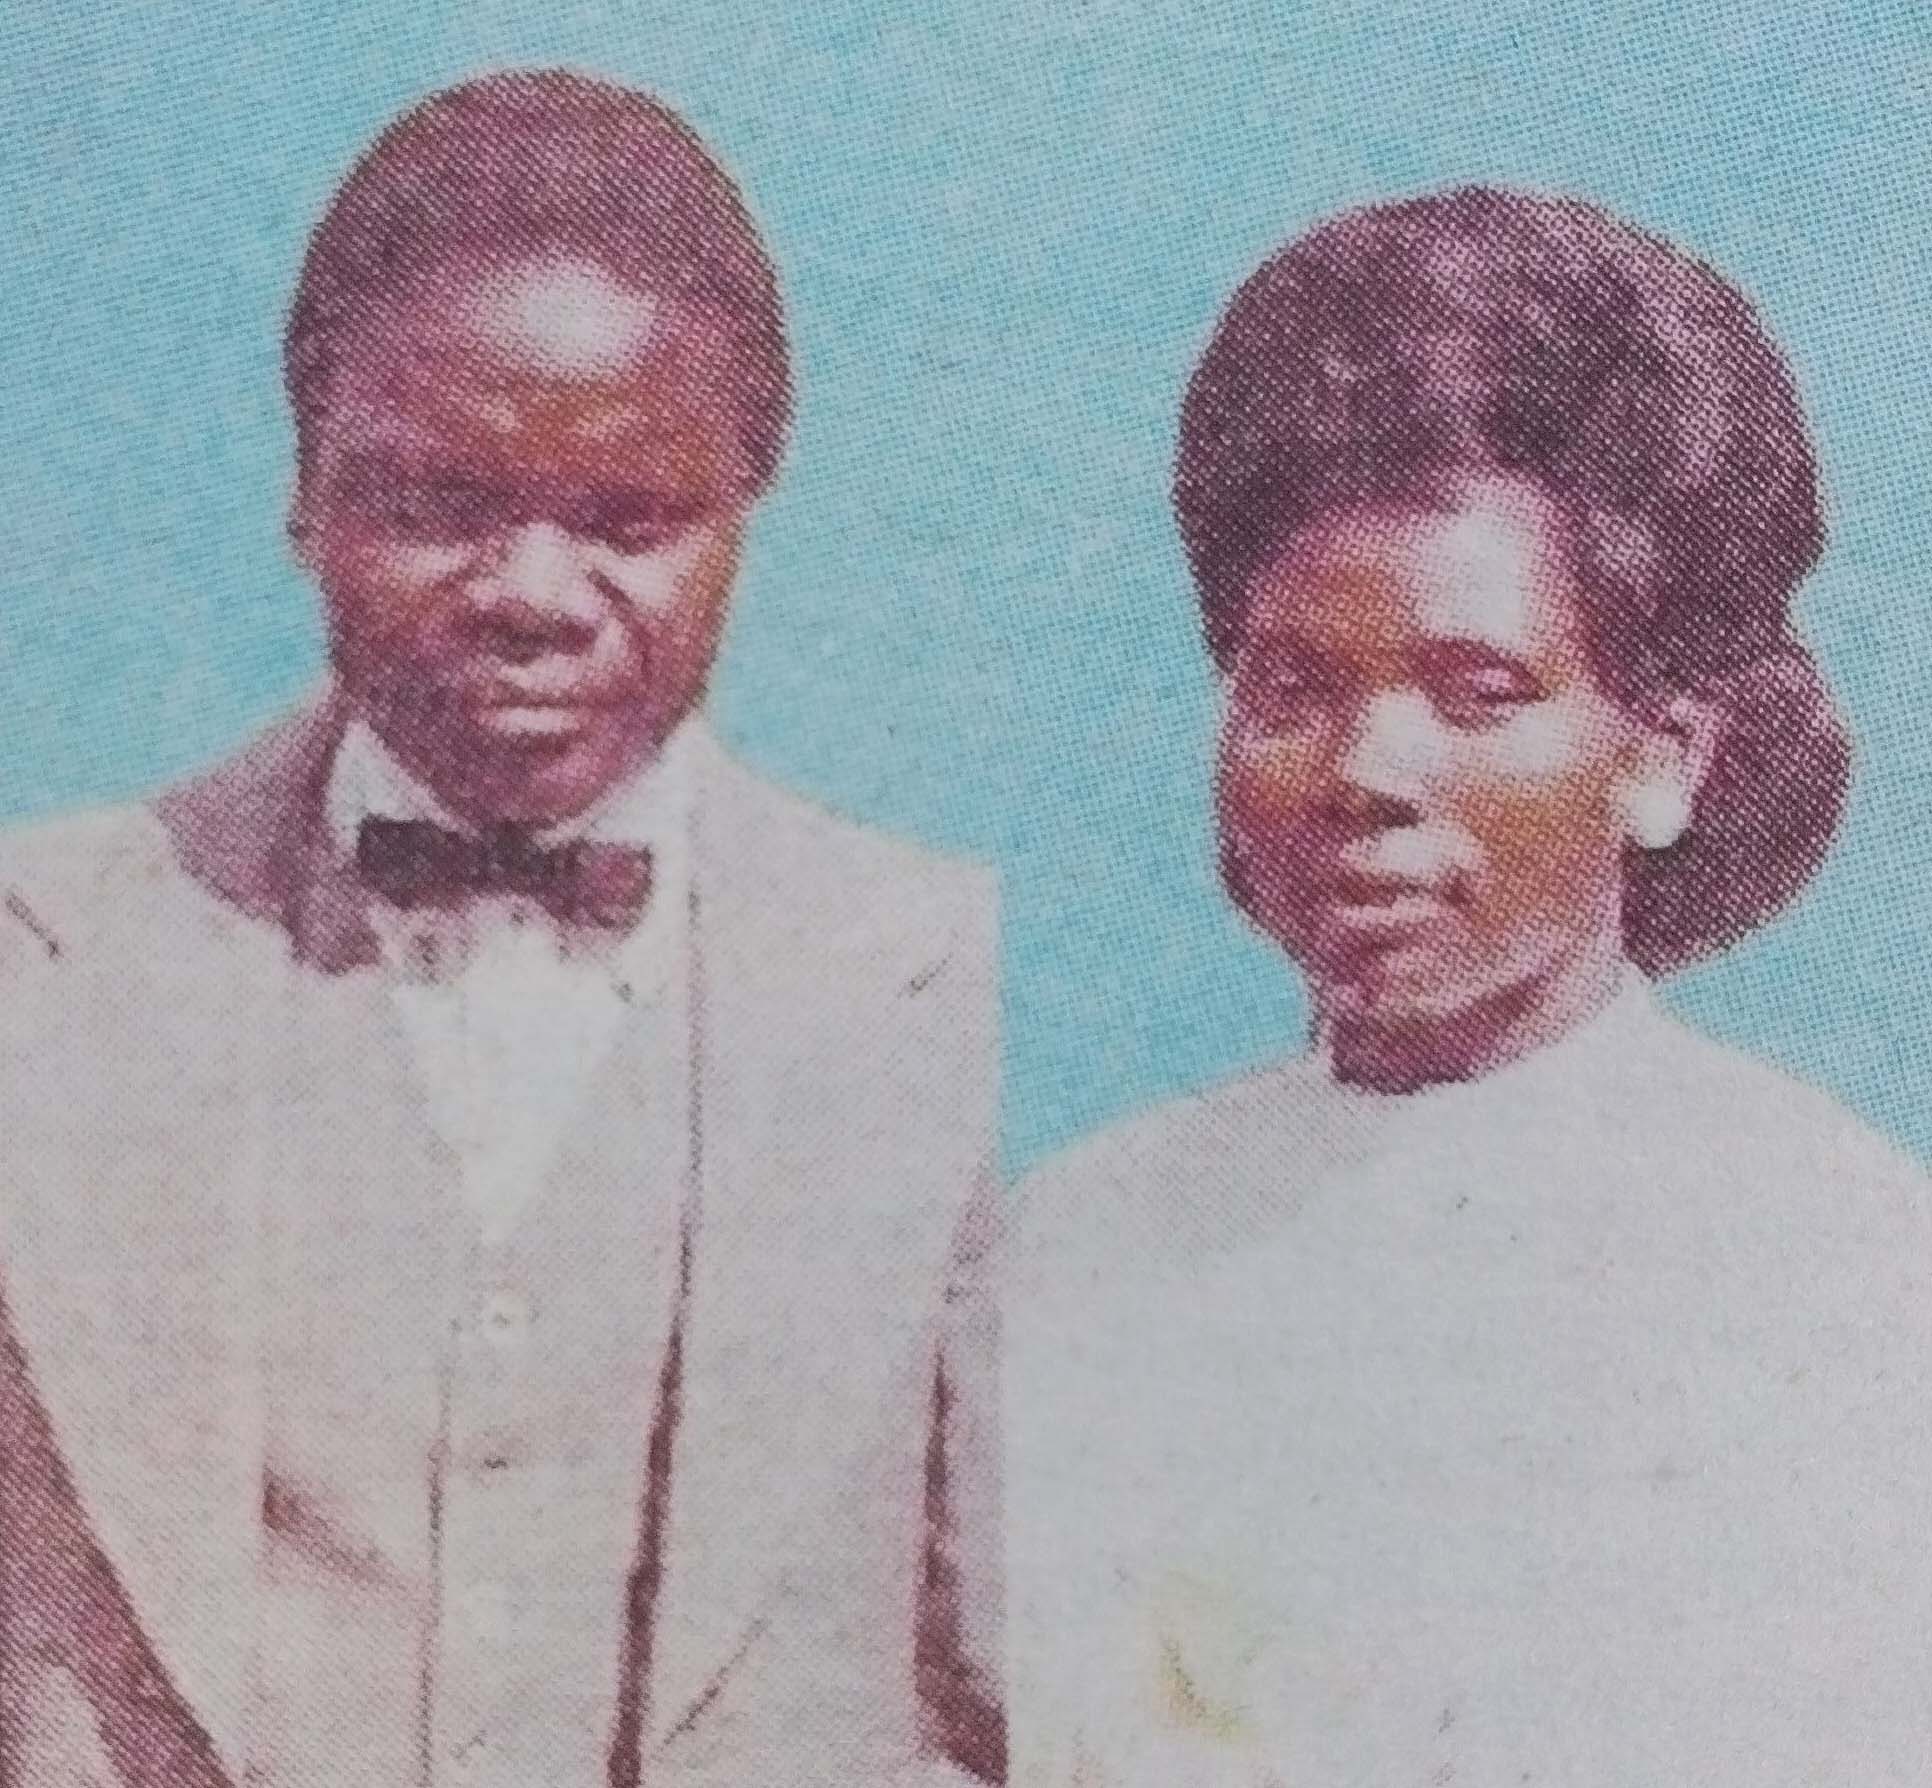 Obituary Image of Theodore Oguma Oketch & Jerusha Oketch